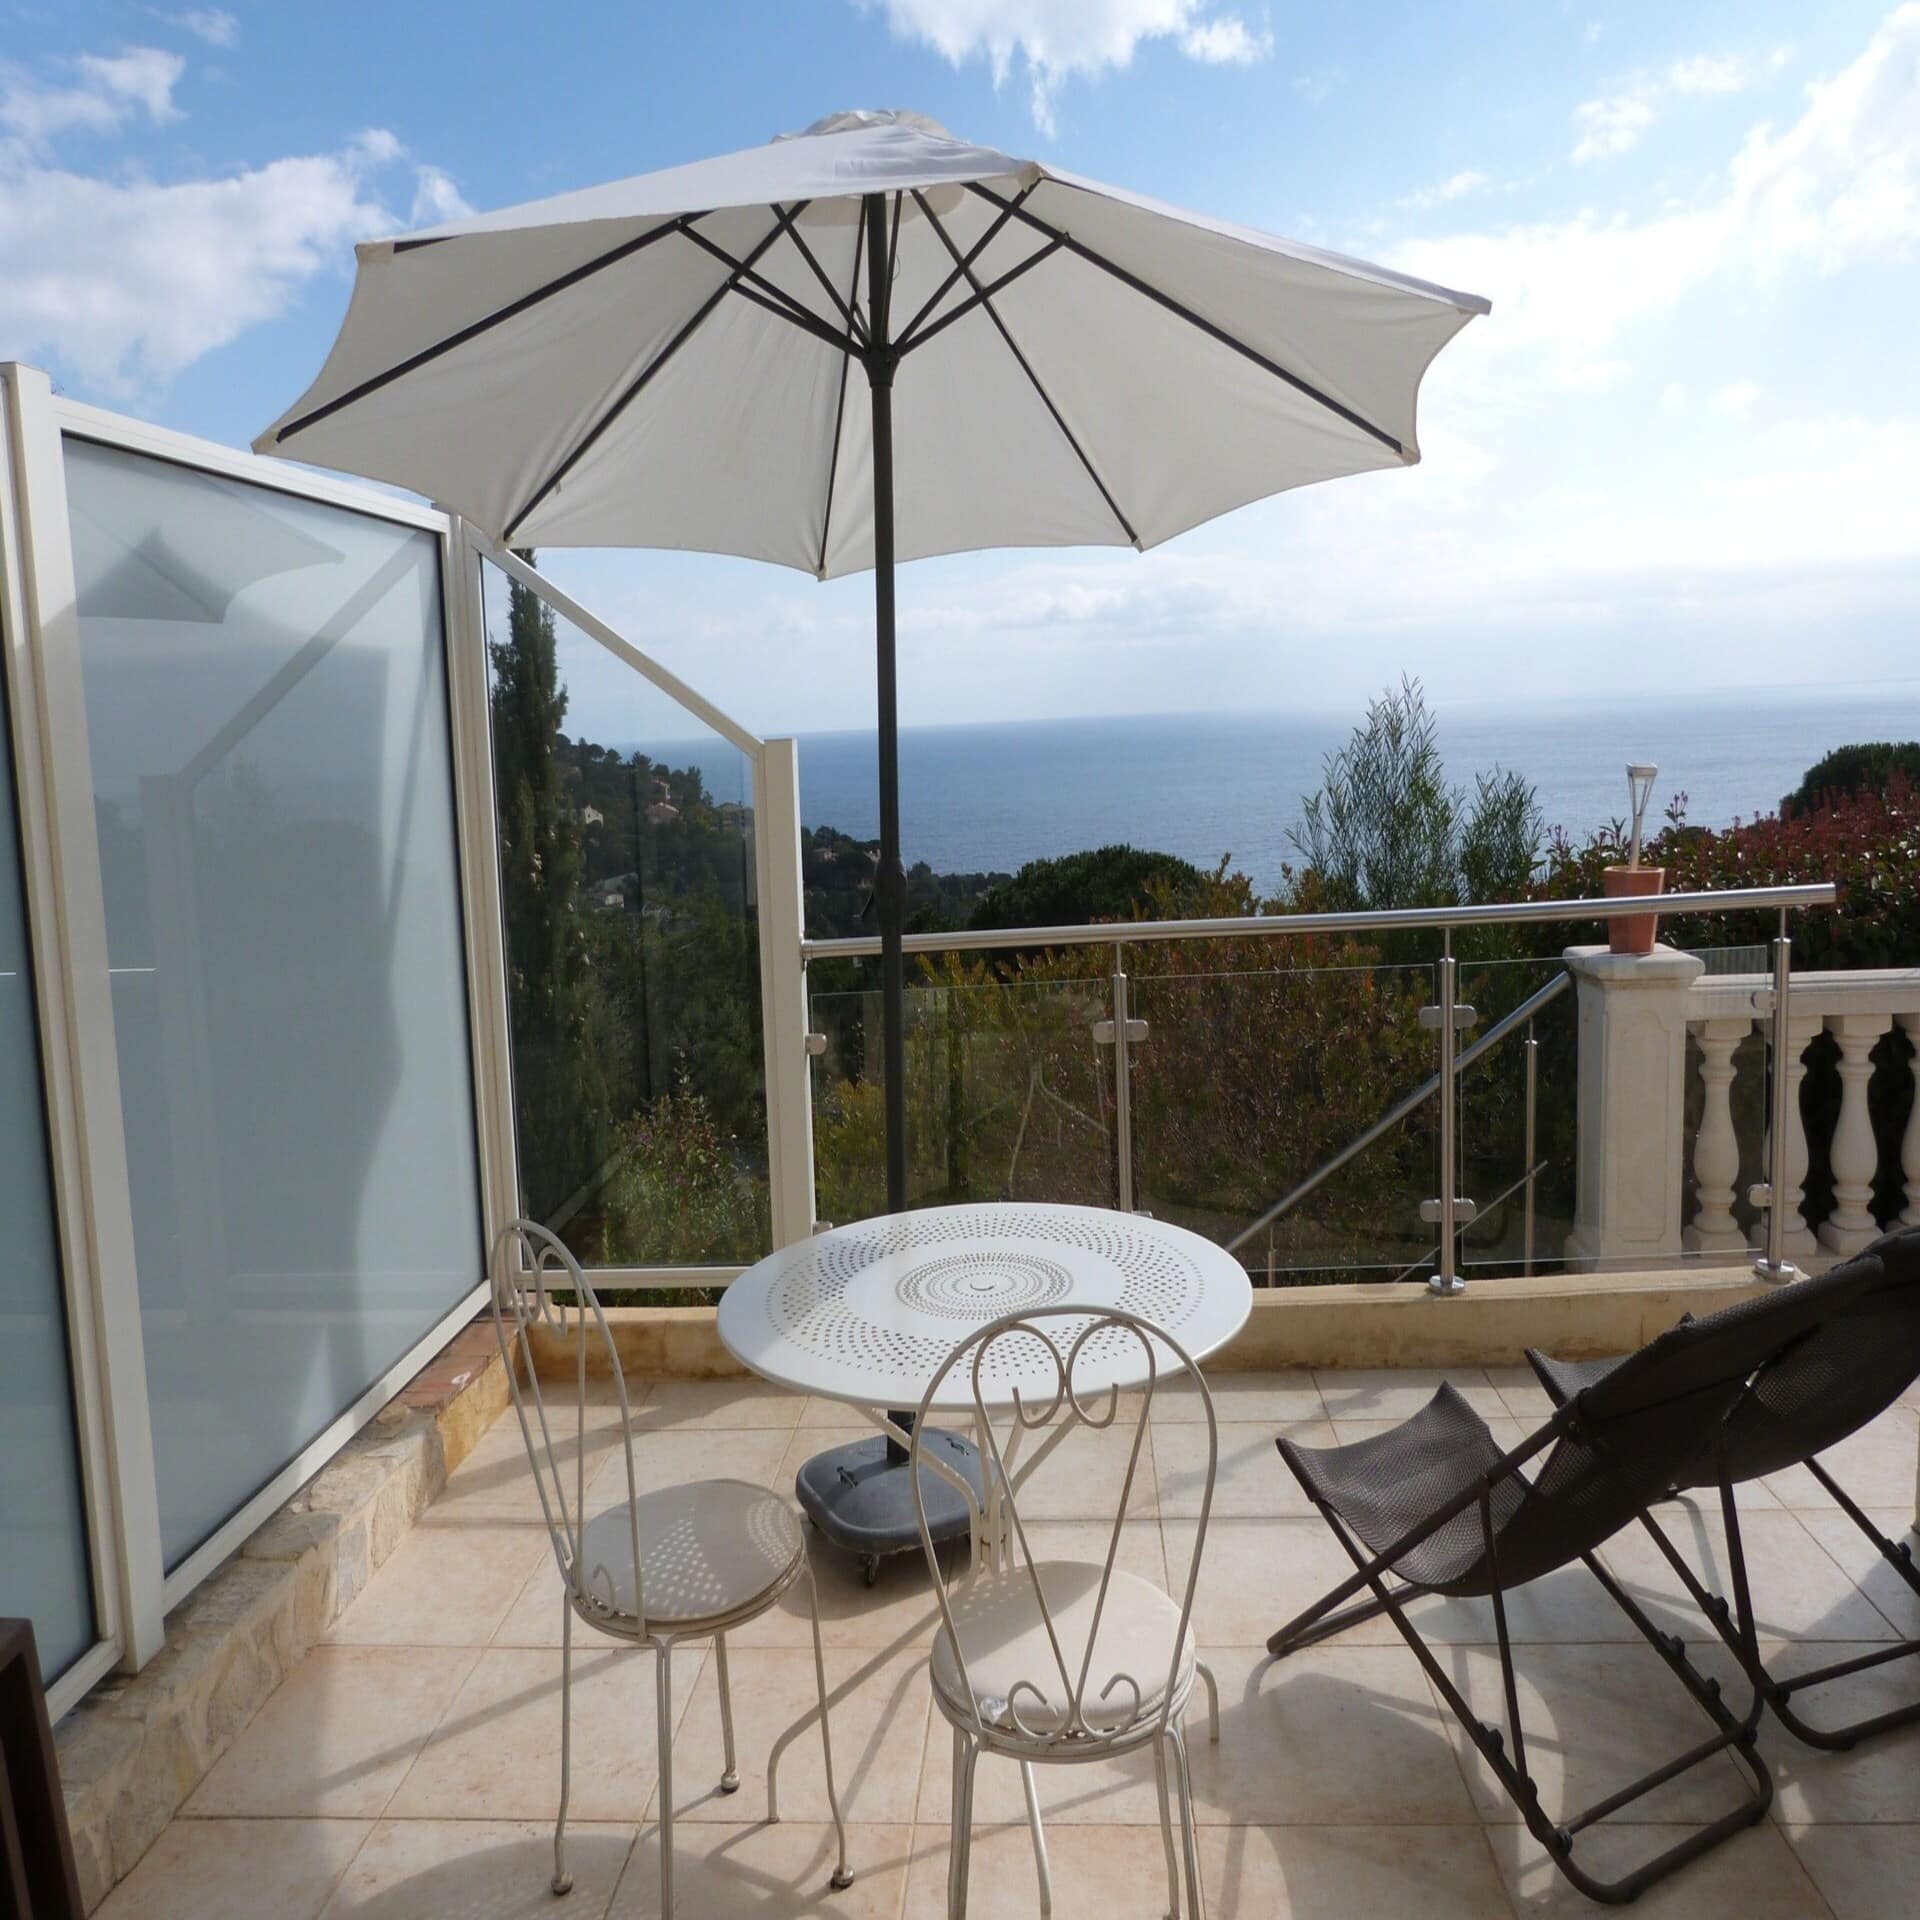 Terrasse mit Tisch, 2 Stühlen, 2 Liegestühlen und Sonnenschirm sowie Blick über Bäume auf das Mittelmeer.